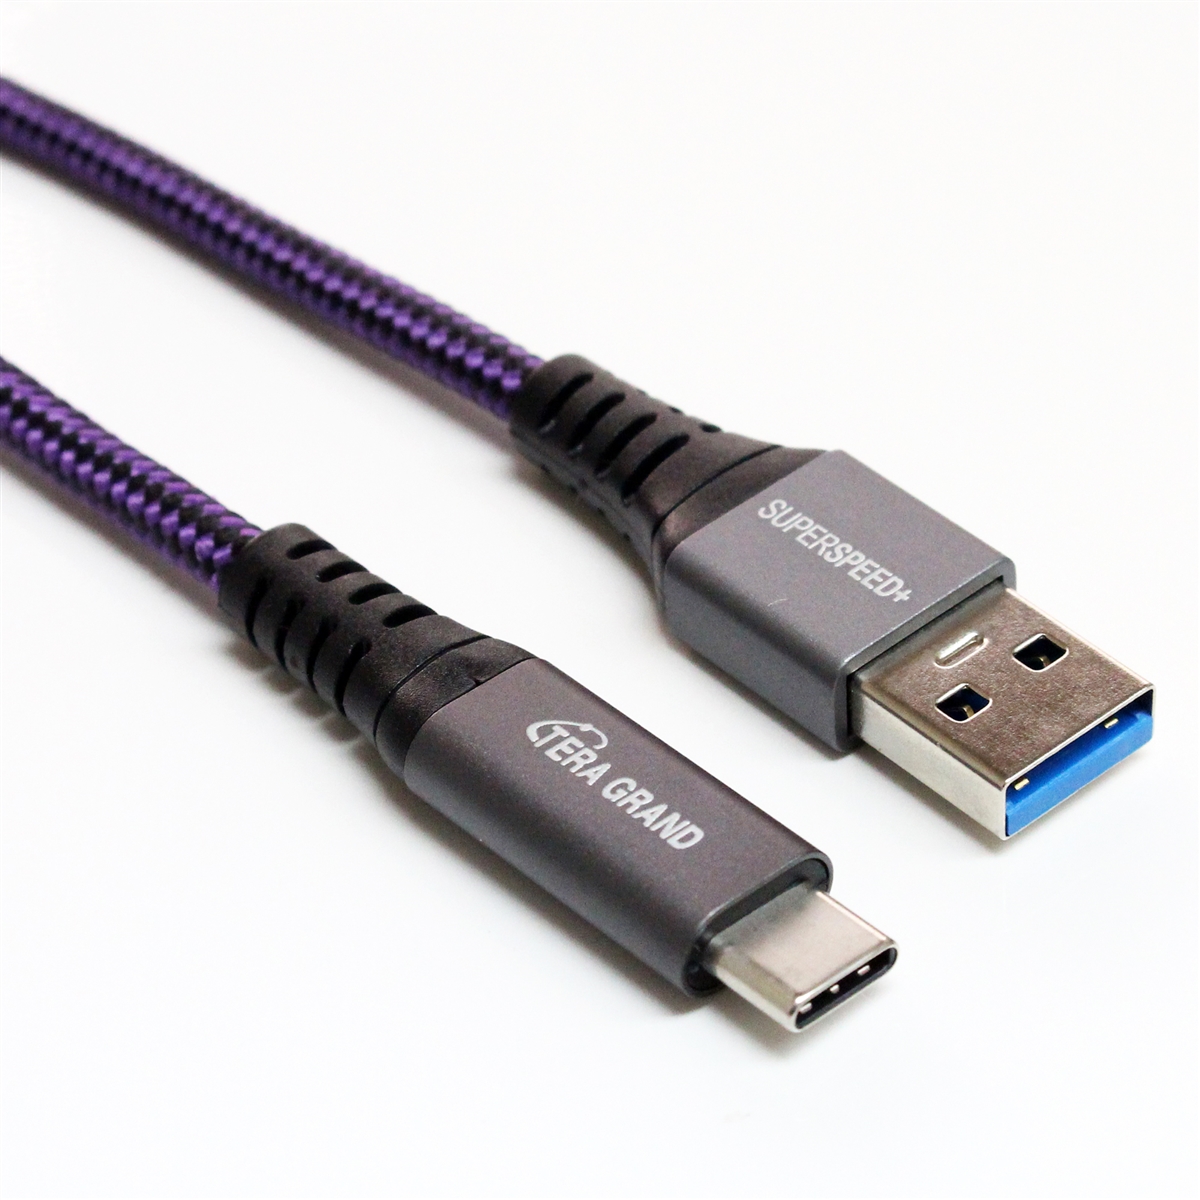 Usb c gen1. Юсб 3.1 Type c. USB 3.2 gen1 Type-a. USB 3.2 gen2 Type-c. USB Type-c кабель USB 3.1.